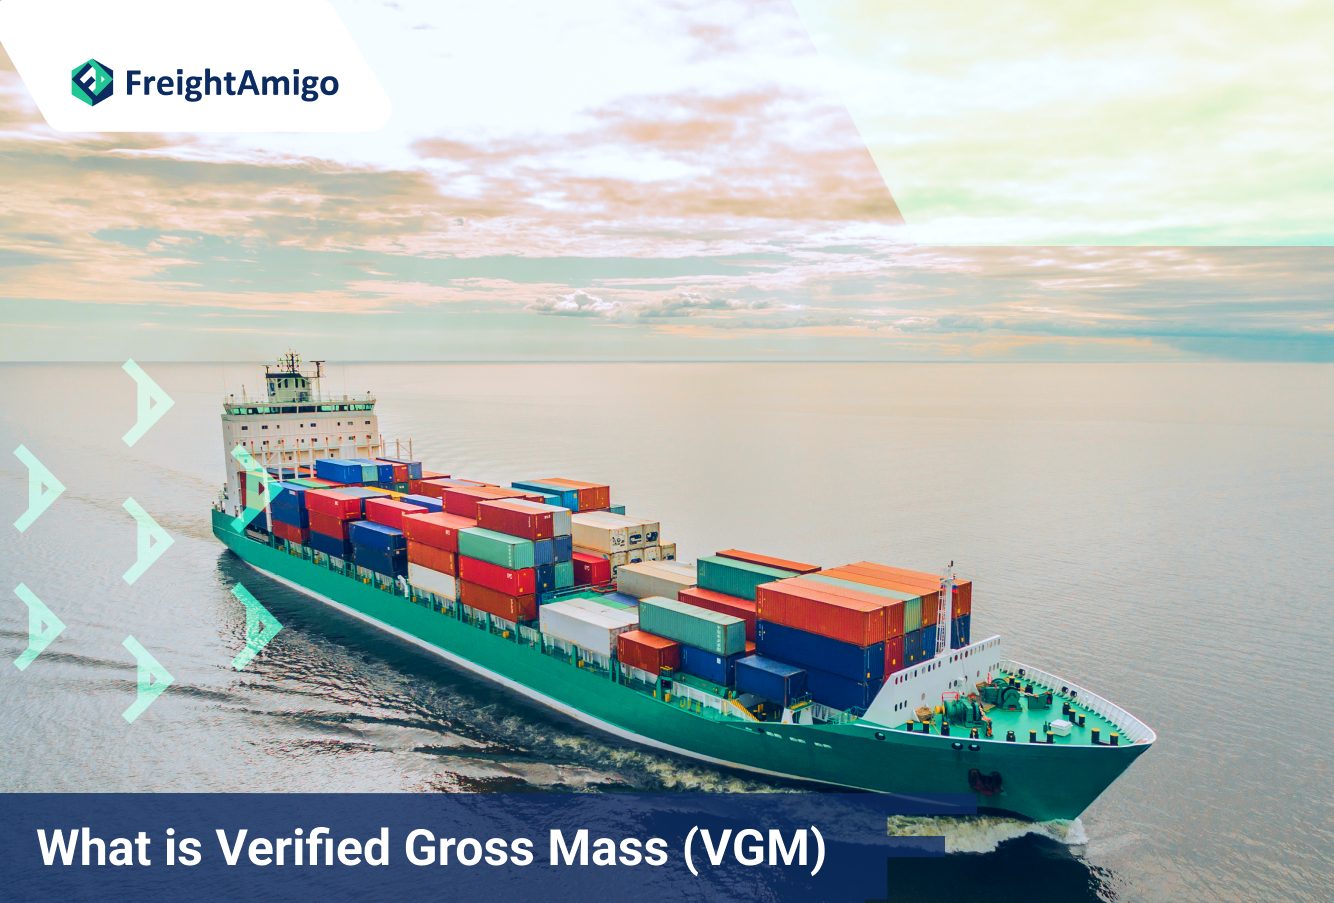 What is Verified Gross Mass (VGM)?